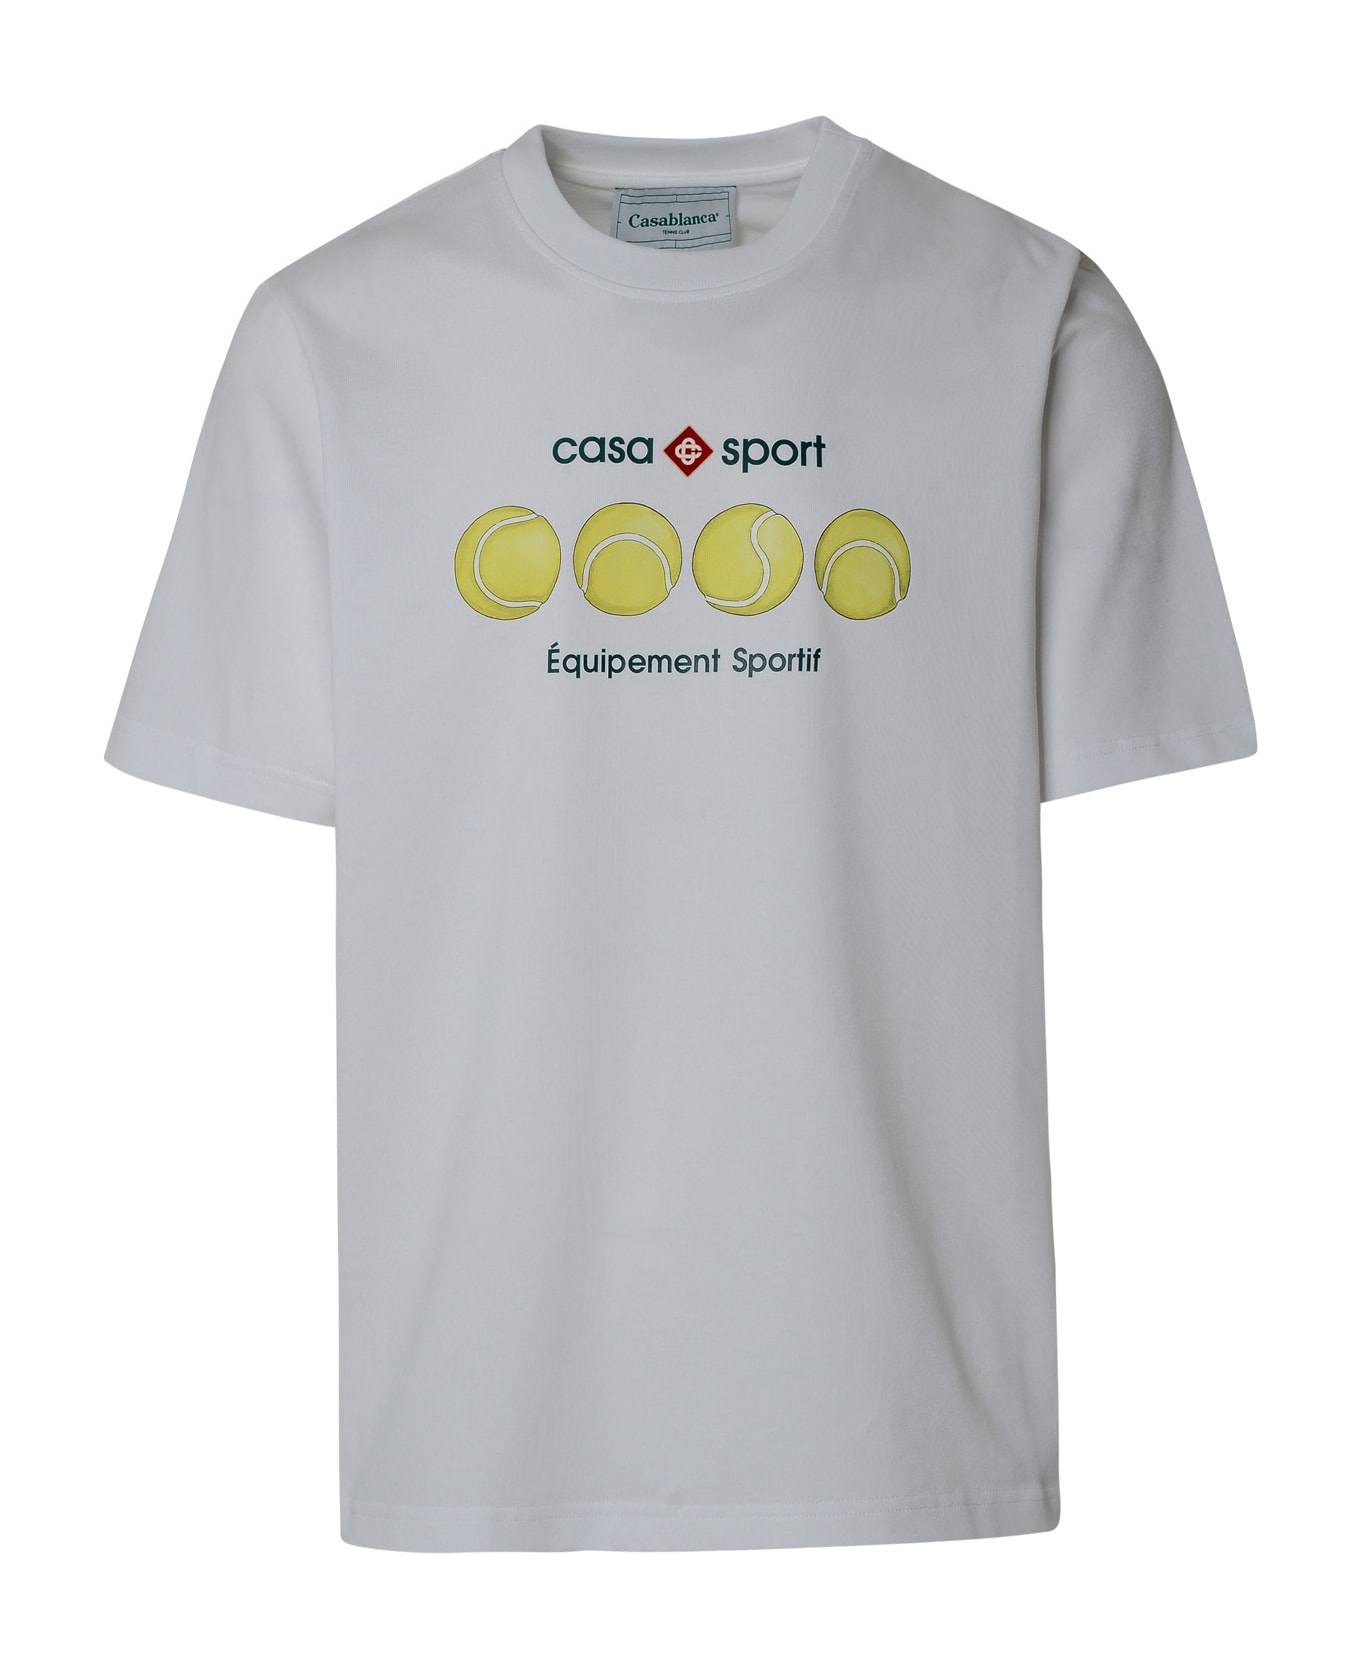 Casablanca 'casa Sport' White Organic Cotton T-shirt - Casa Sport Tennis Balls